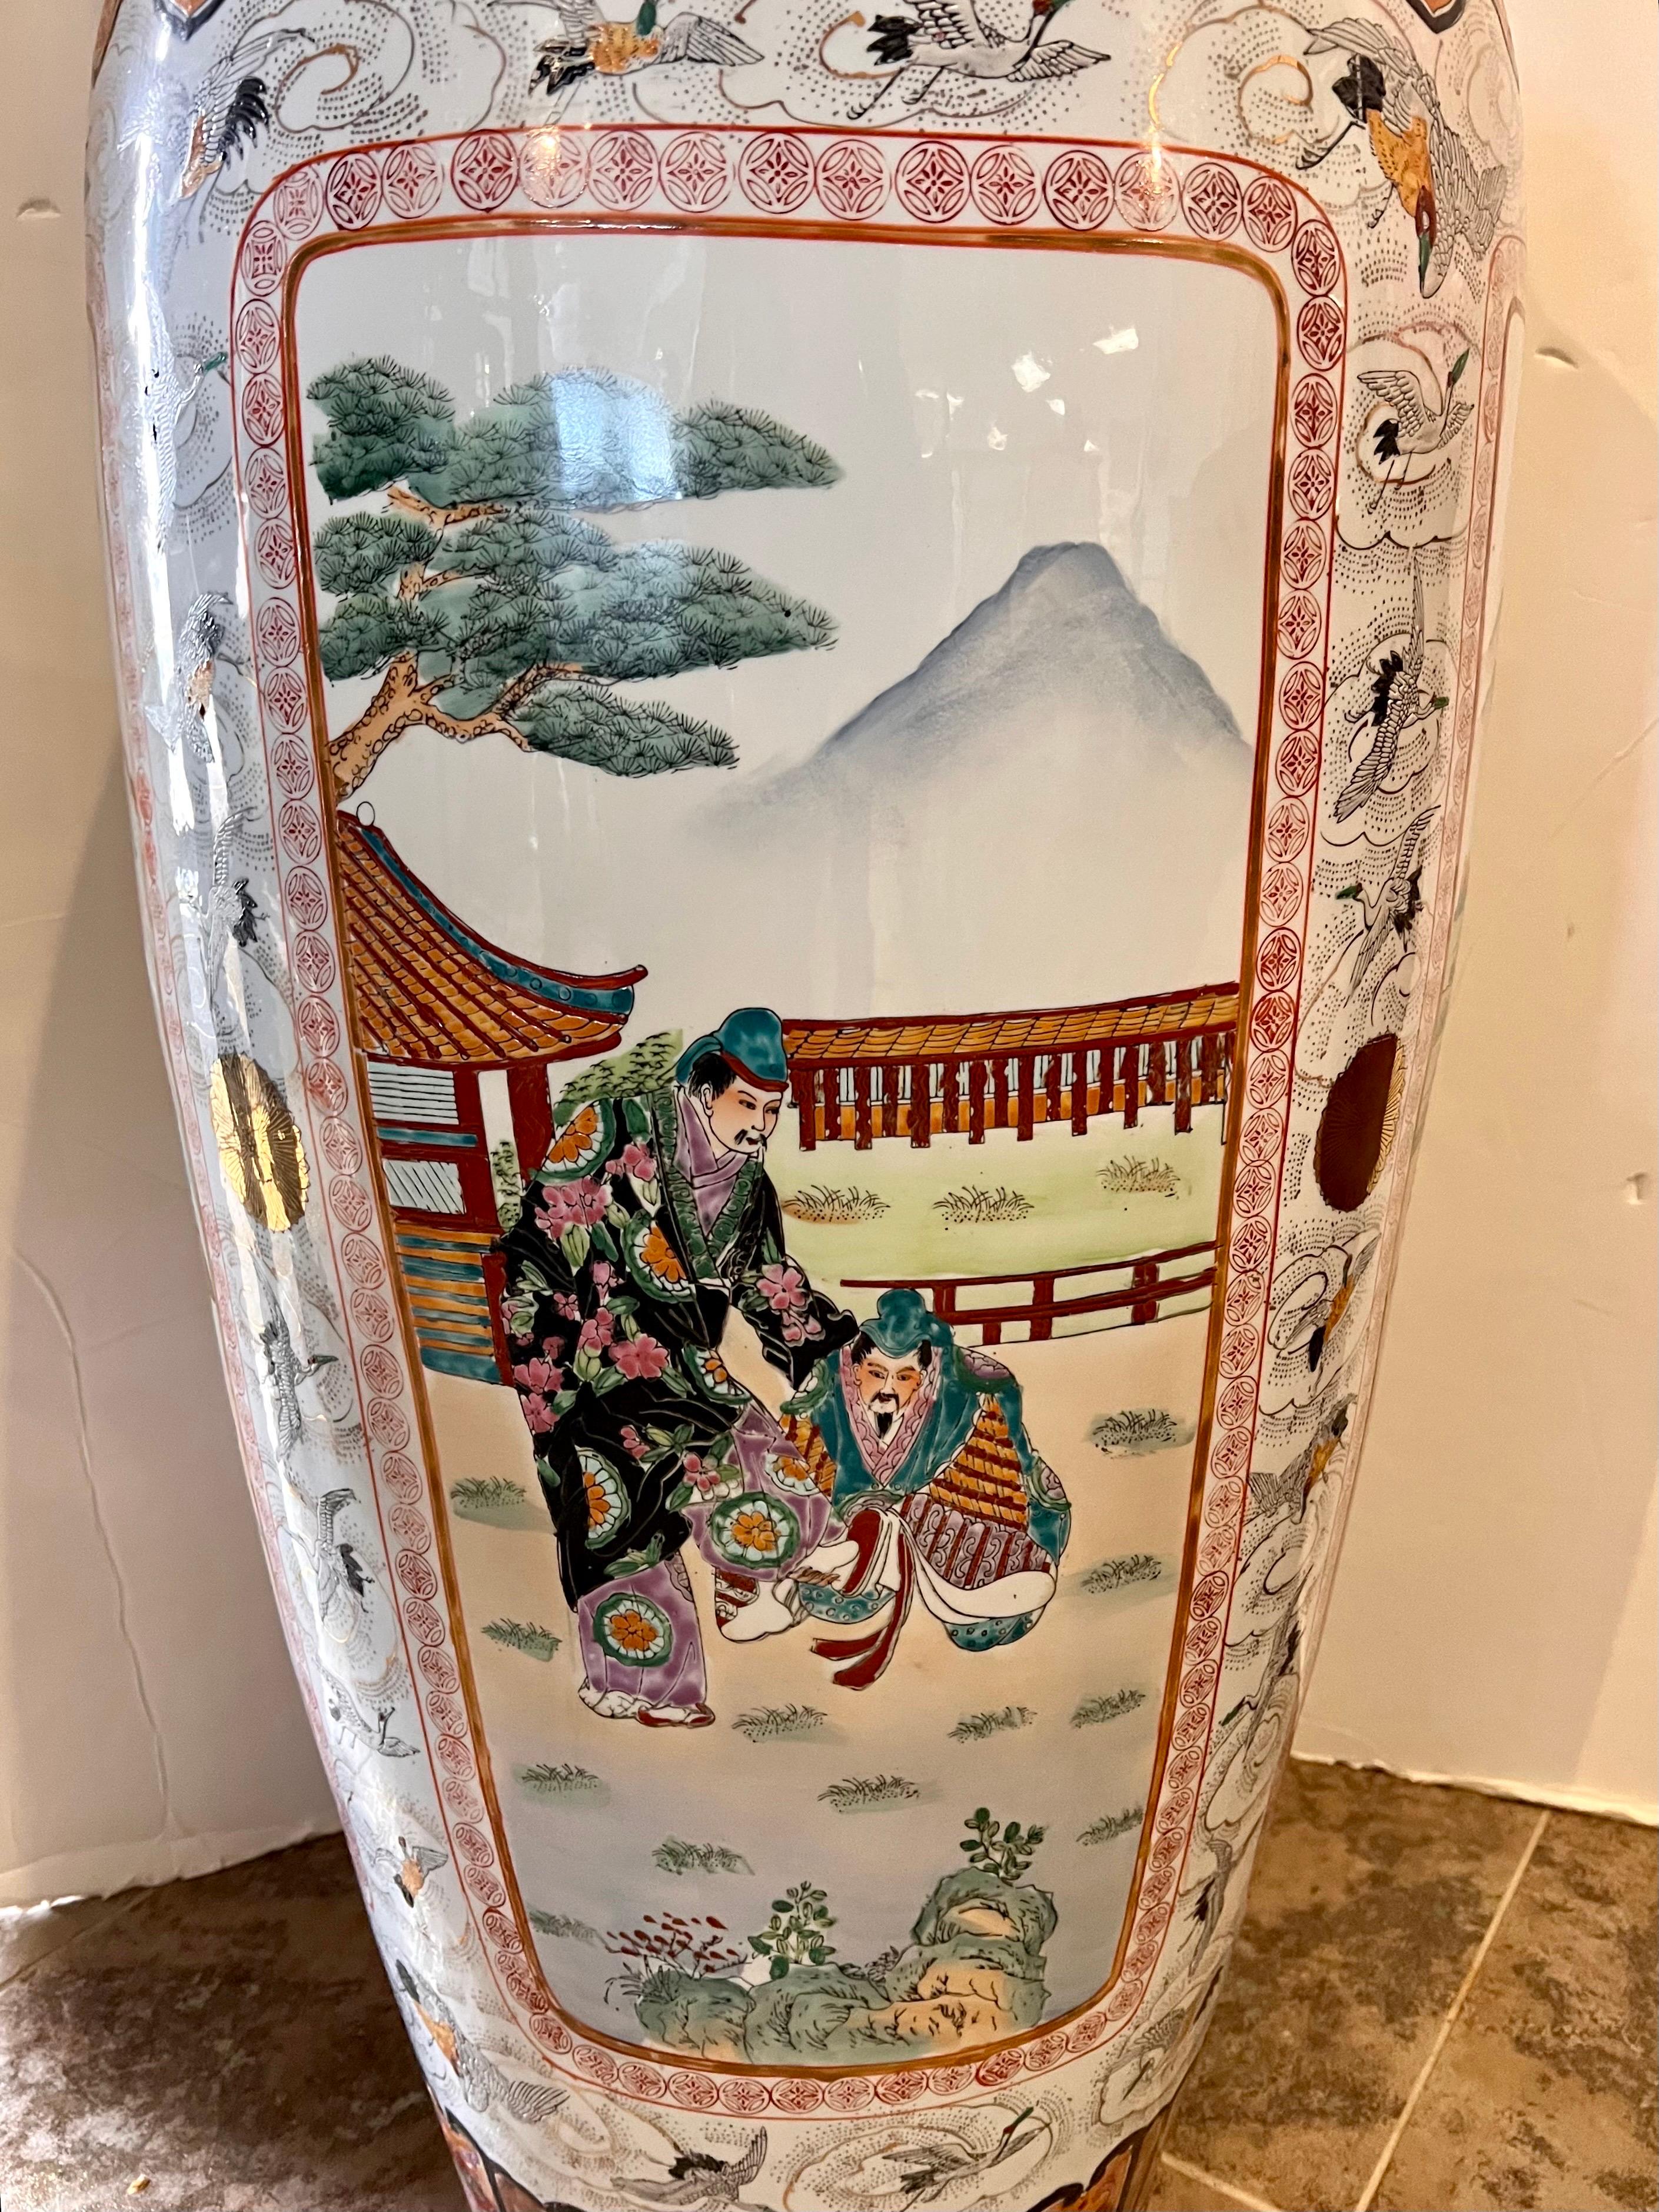 Extra Tall Palace Sized Extra Large Colorful Chinese Porcelain Vase Urn 3